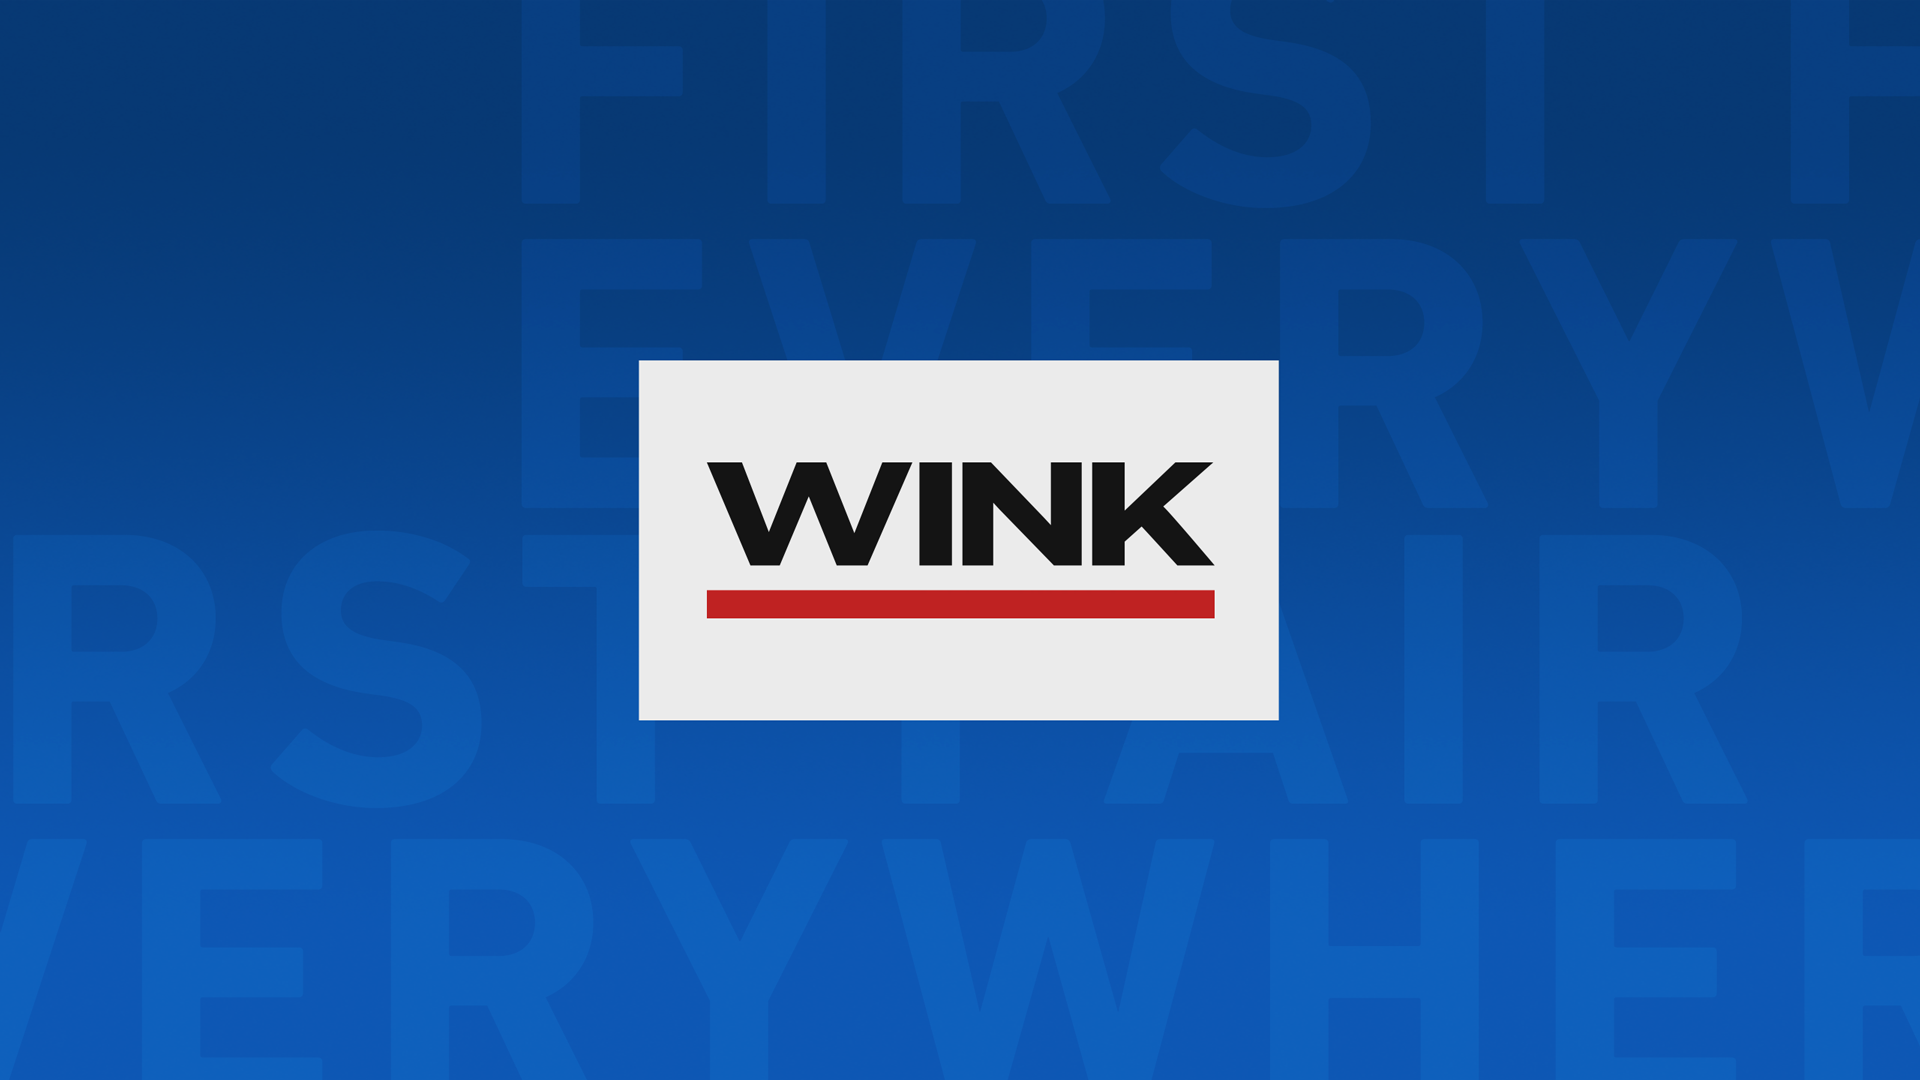 WINK News at 6